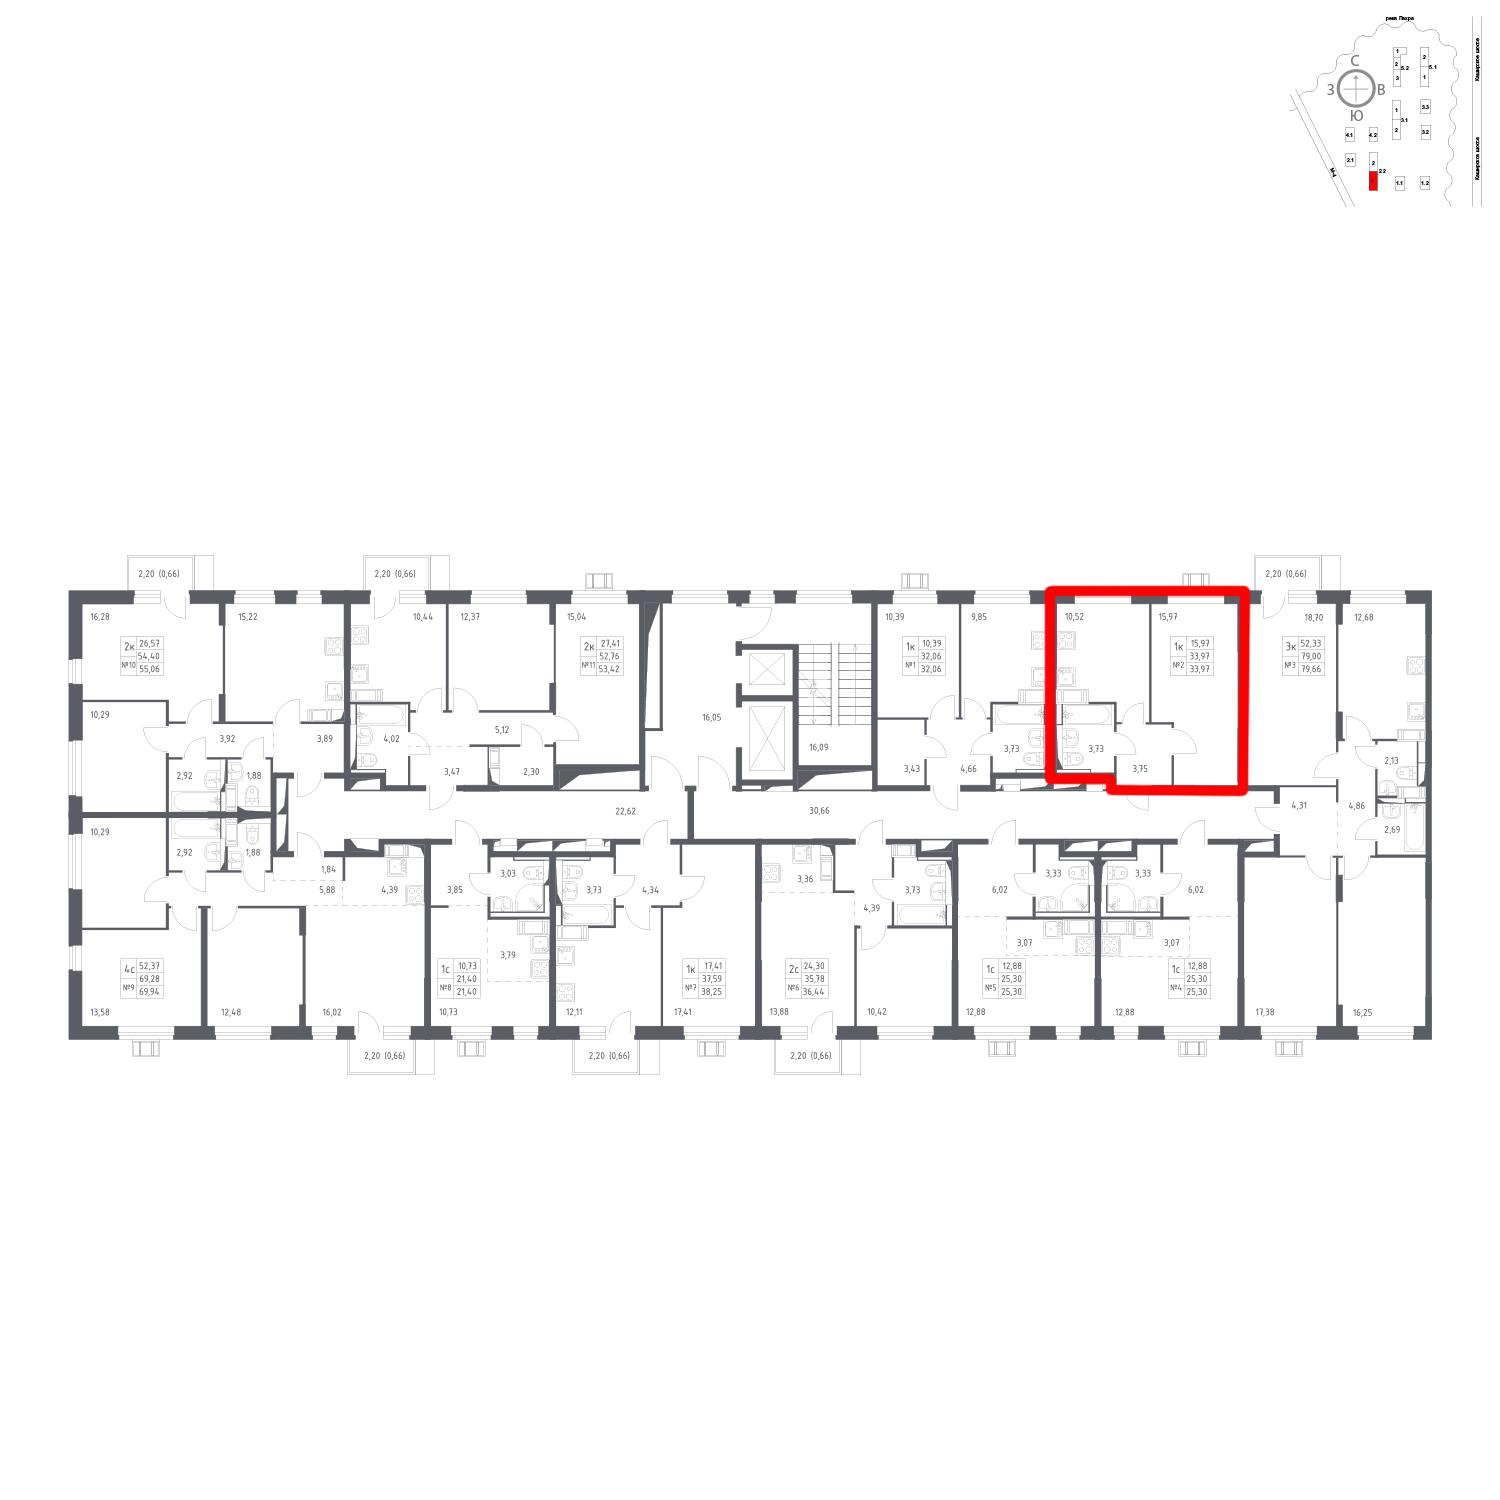 Продаётся 1-комнатная квартира в новостройке 34.0 кв.м. этаж 11/17 за 6 106 896 руб 